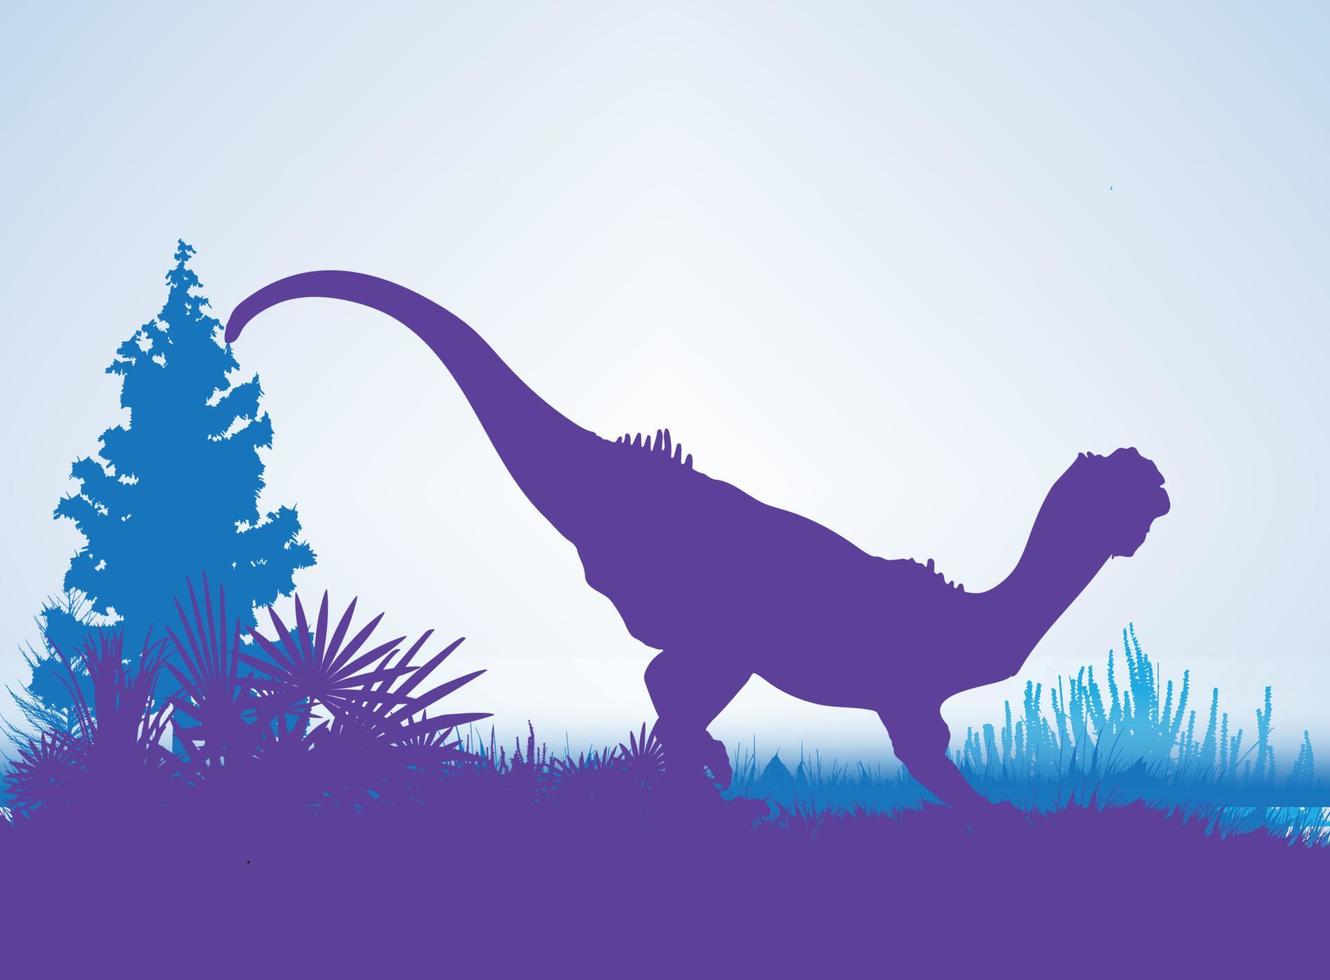 chilesaurus, sagome di dinosauri in ambiente preistorico strati sovrapposti sfondo decorativo banner astratto illustrazione vettoriale